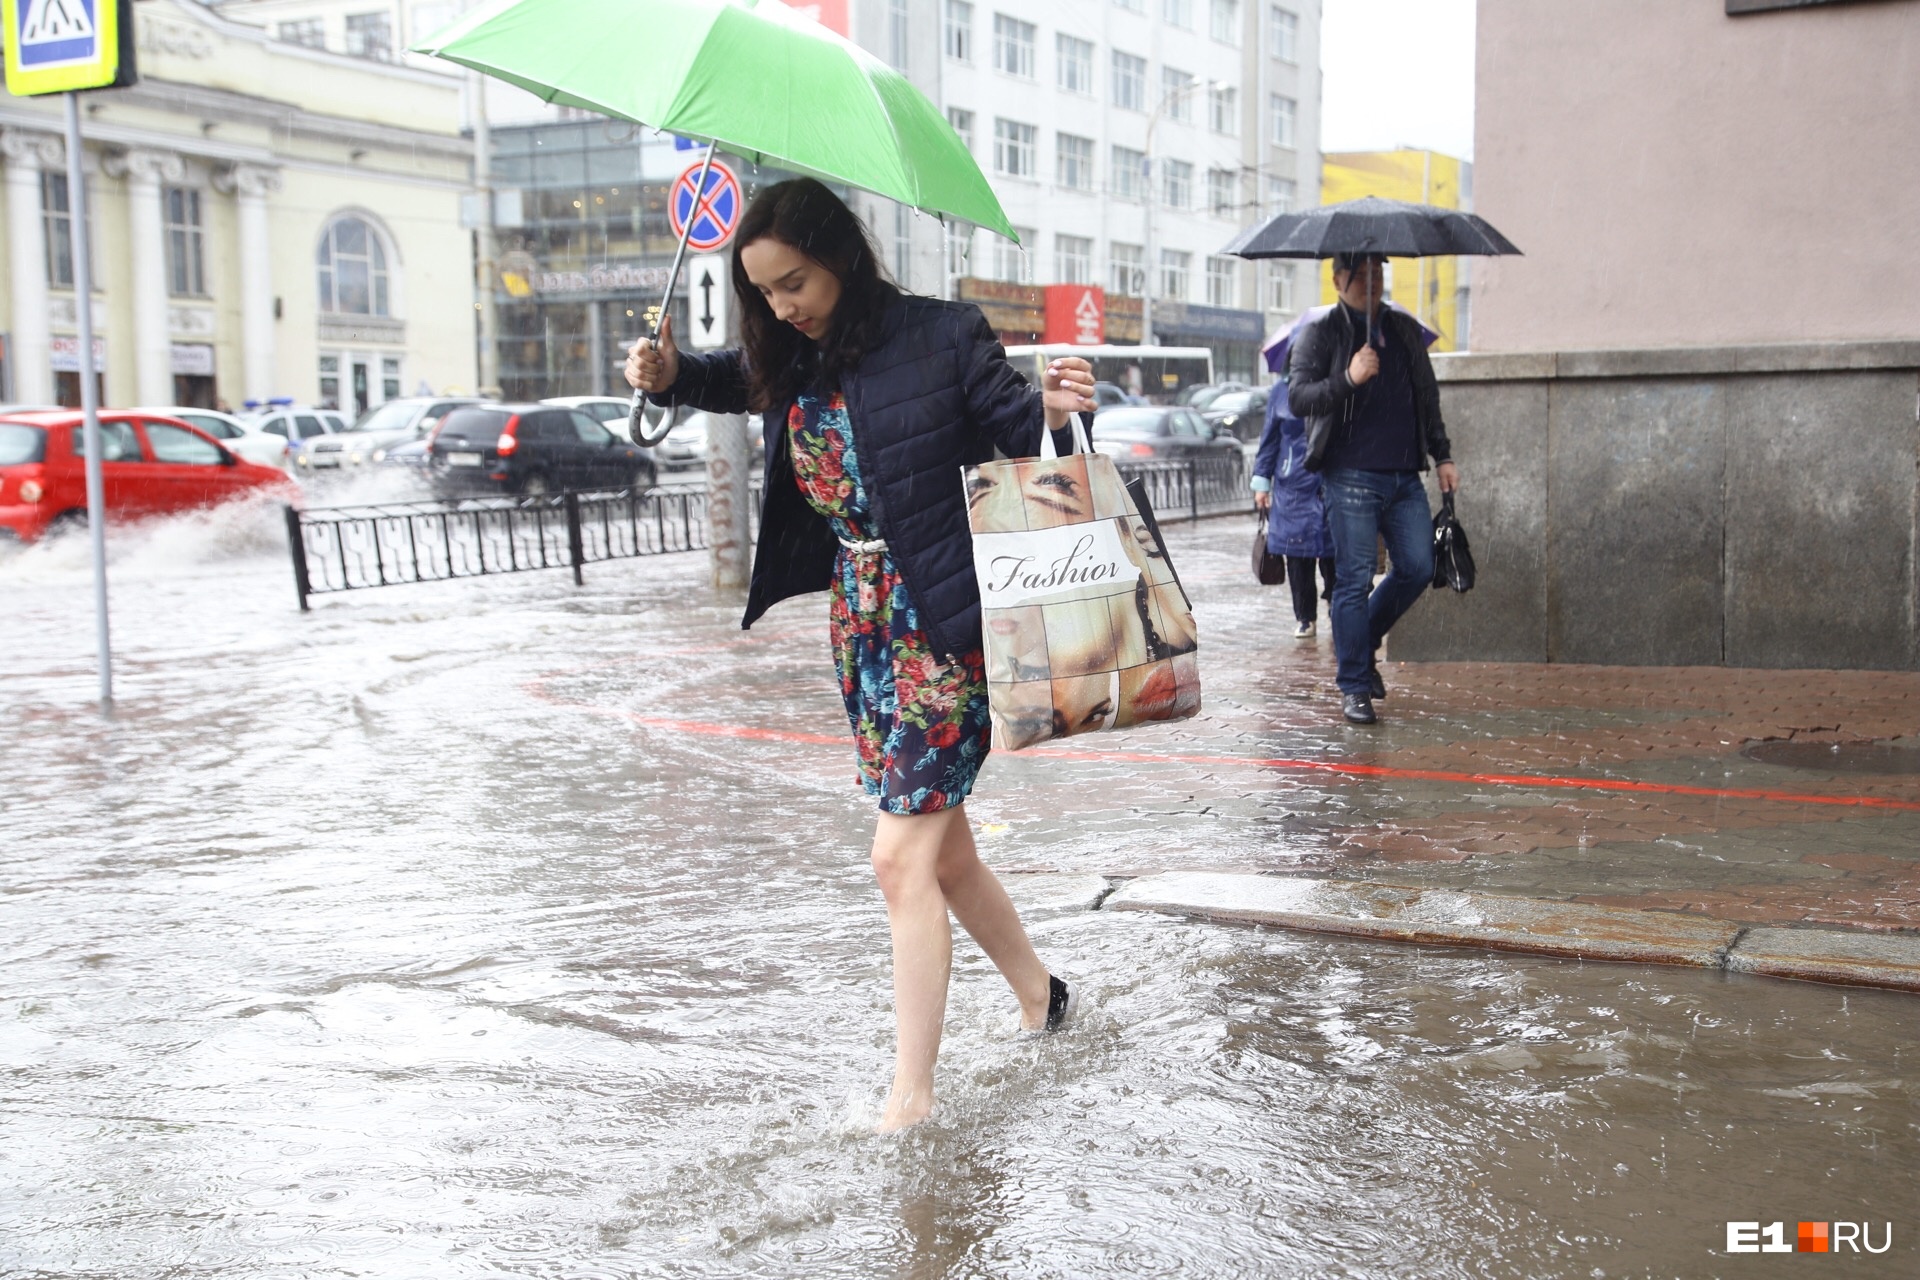 Гром и молнии! В выходные в Екатеринбурге пройдут настоящие тропические ливни